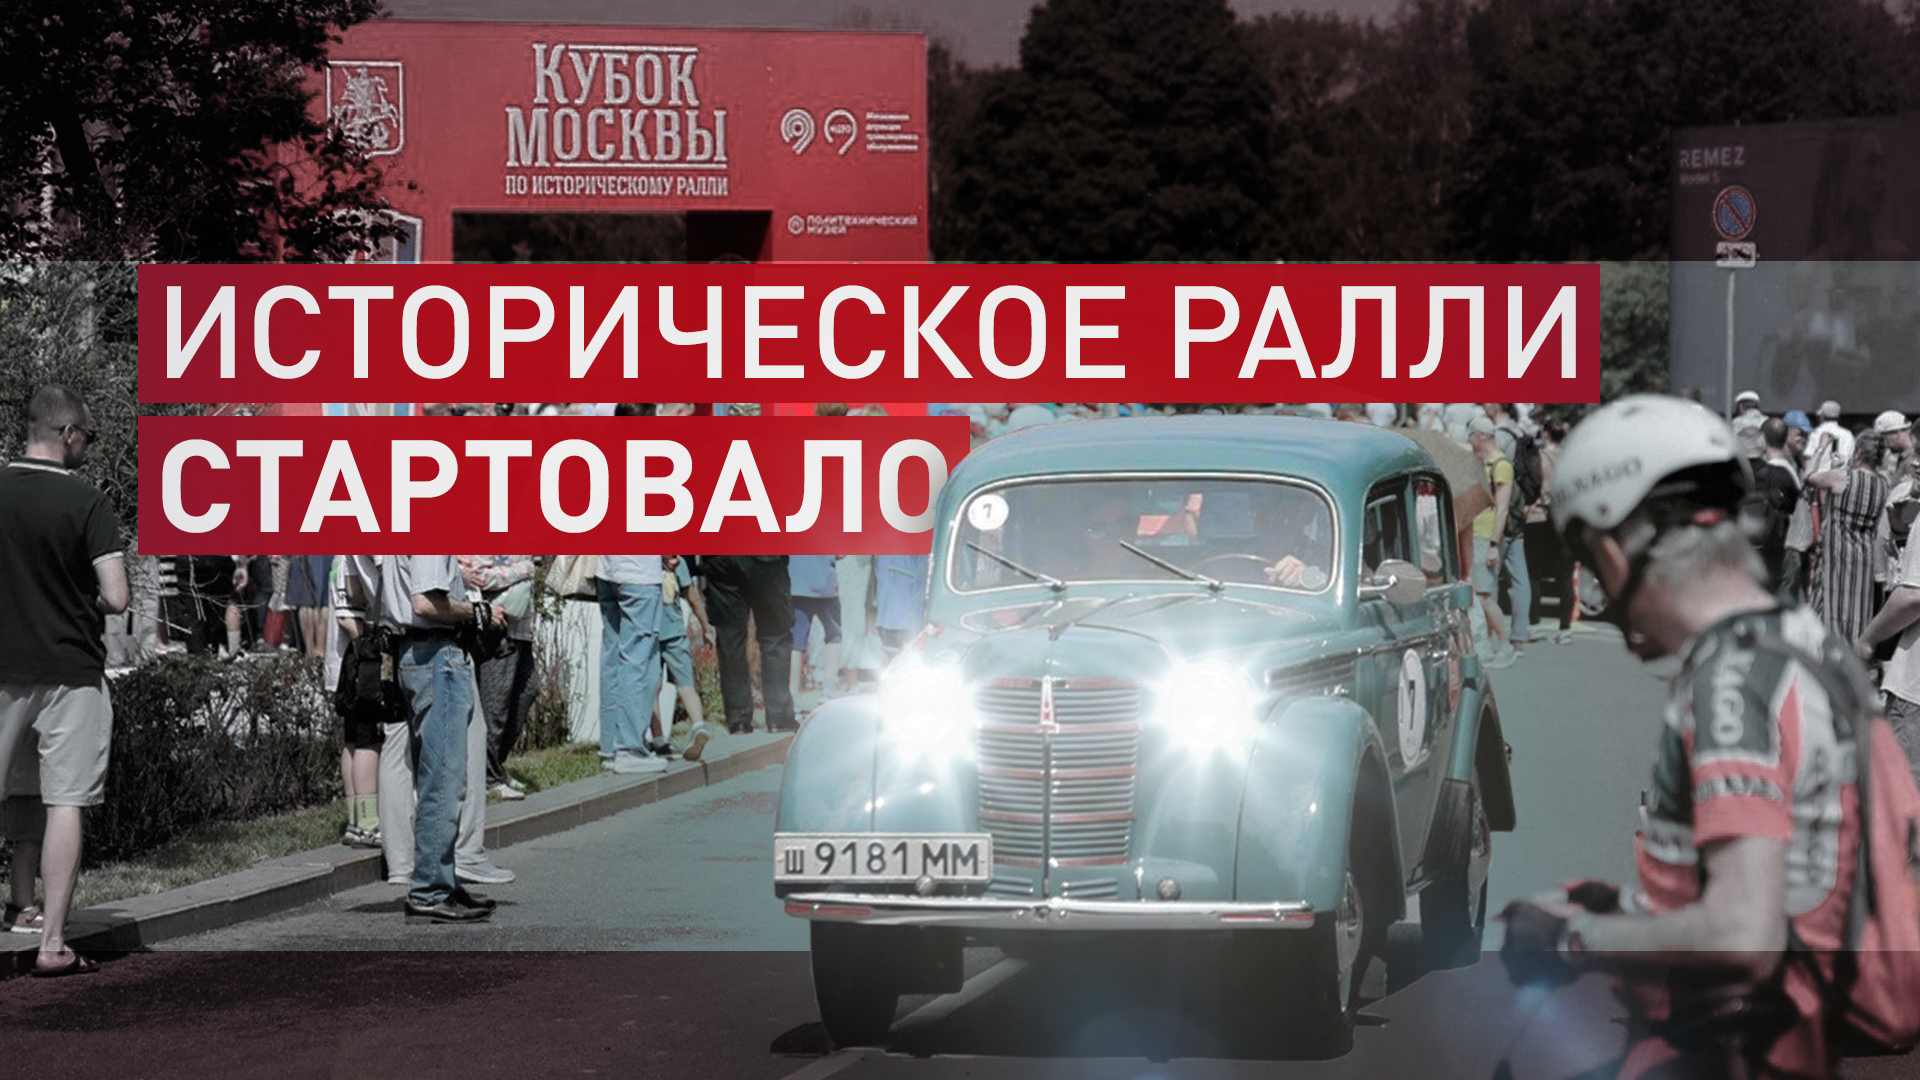 Впервые в столице: Кубок Москвы по историческому ралли начался